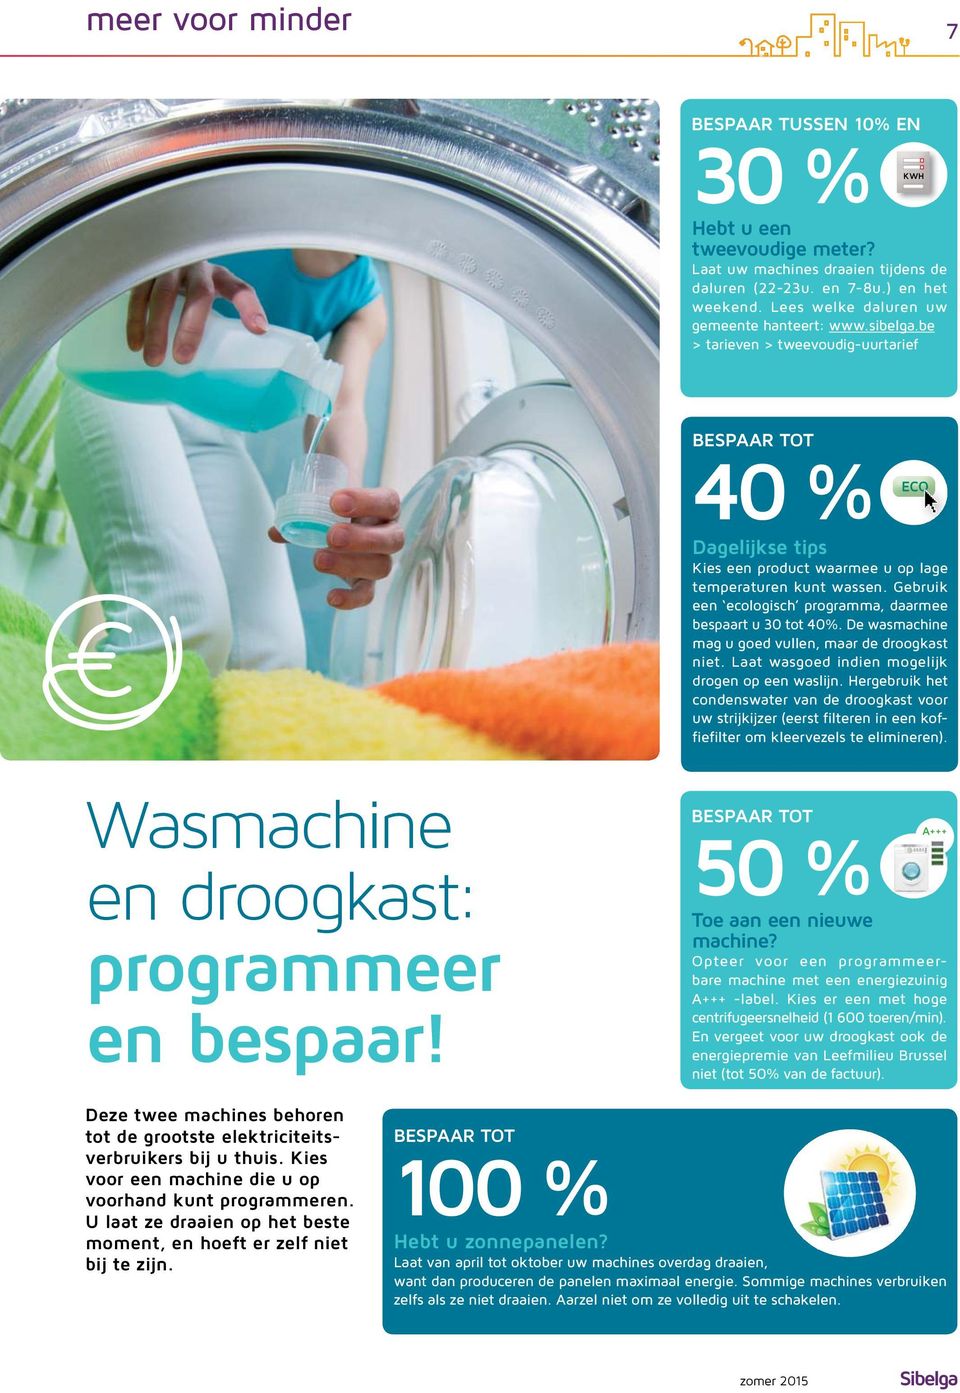 Gebruik een ecologisch programma, daarmee bespaart u 30 tot 40%. De wasmachine mag u goed vullen, maar de droogkast niet. Laat wasgoed indien mogelijk drogen op een waslijn.